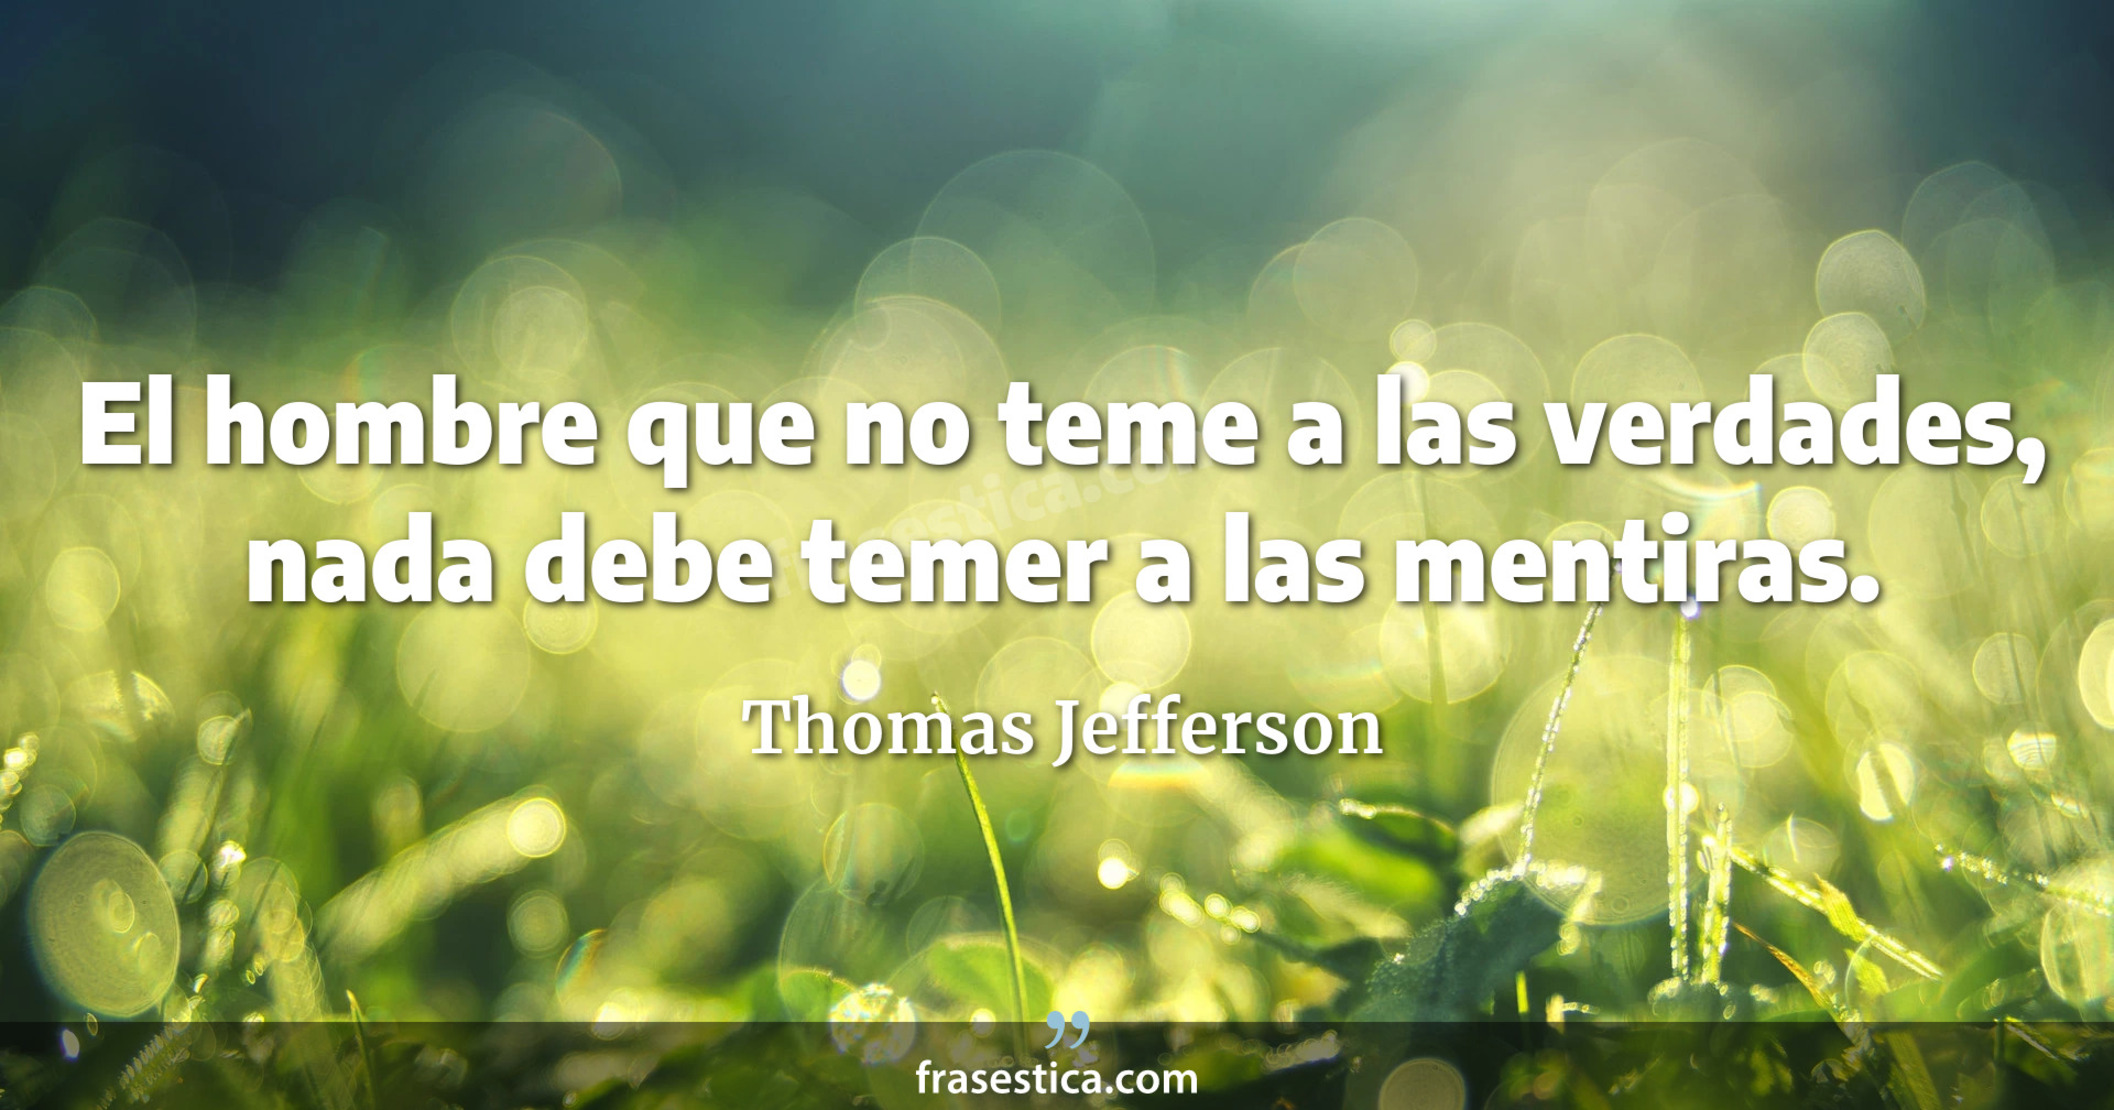 El hombre que no teme a las verdades, nada debe temer a las mentiras. - Thomas Jefferson